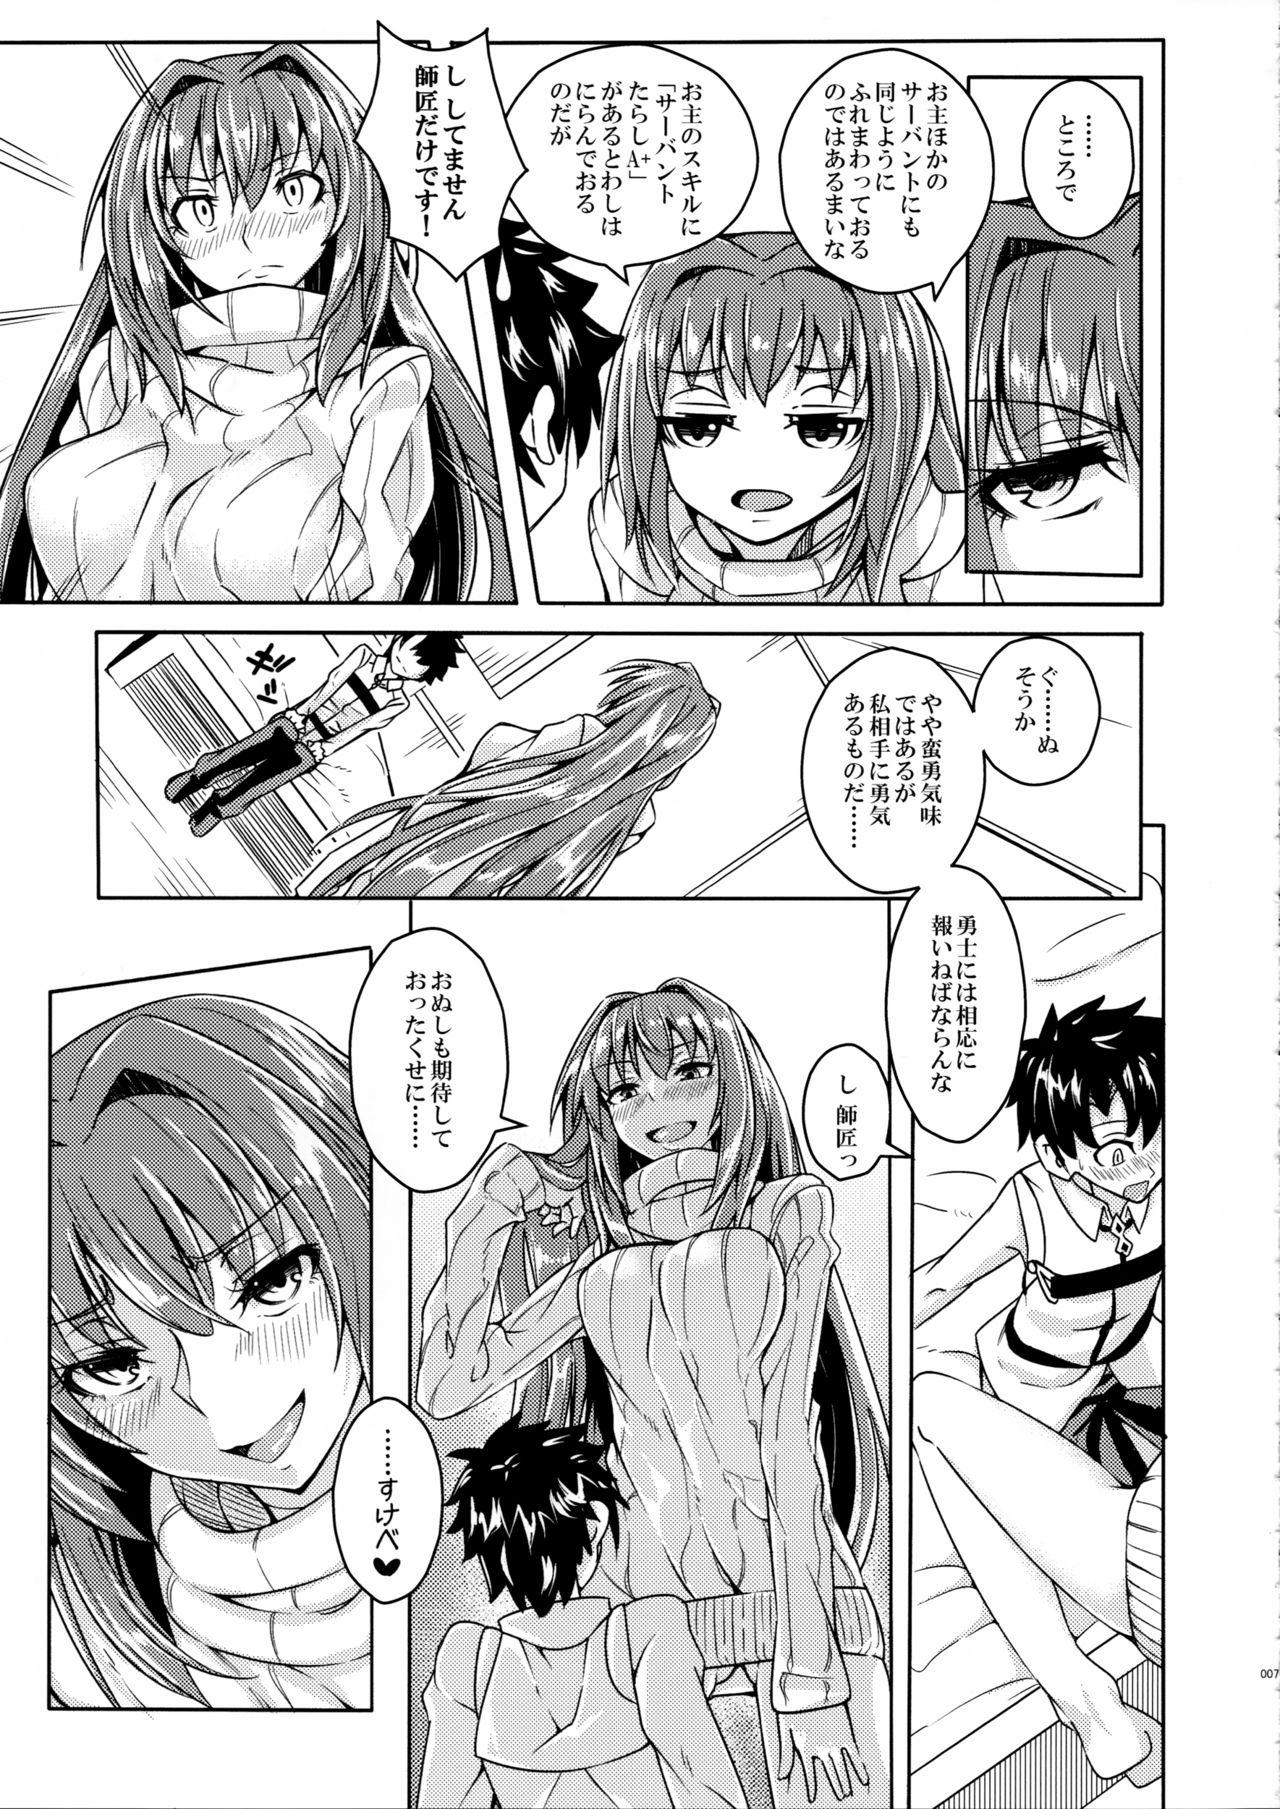 Por Makuai no Ura Monogatari Kan - Fate grand order Bukkake - Page 6